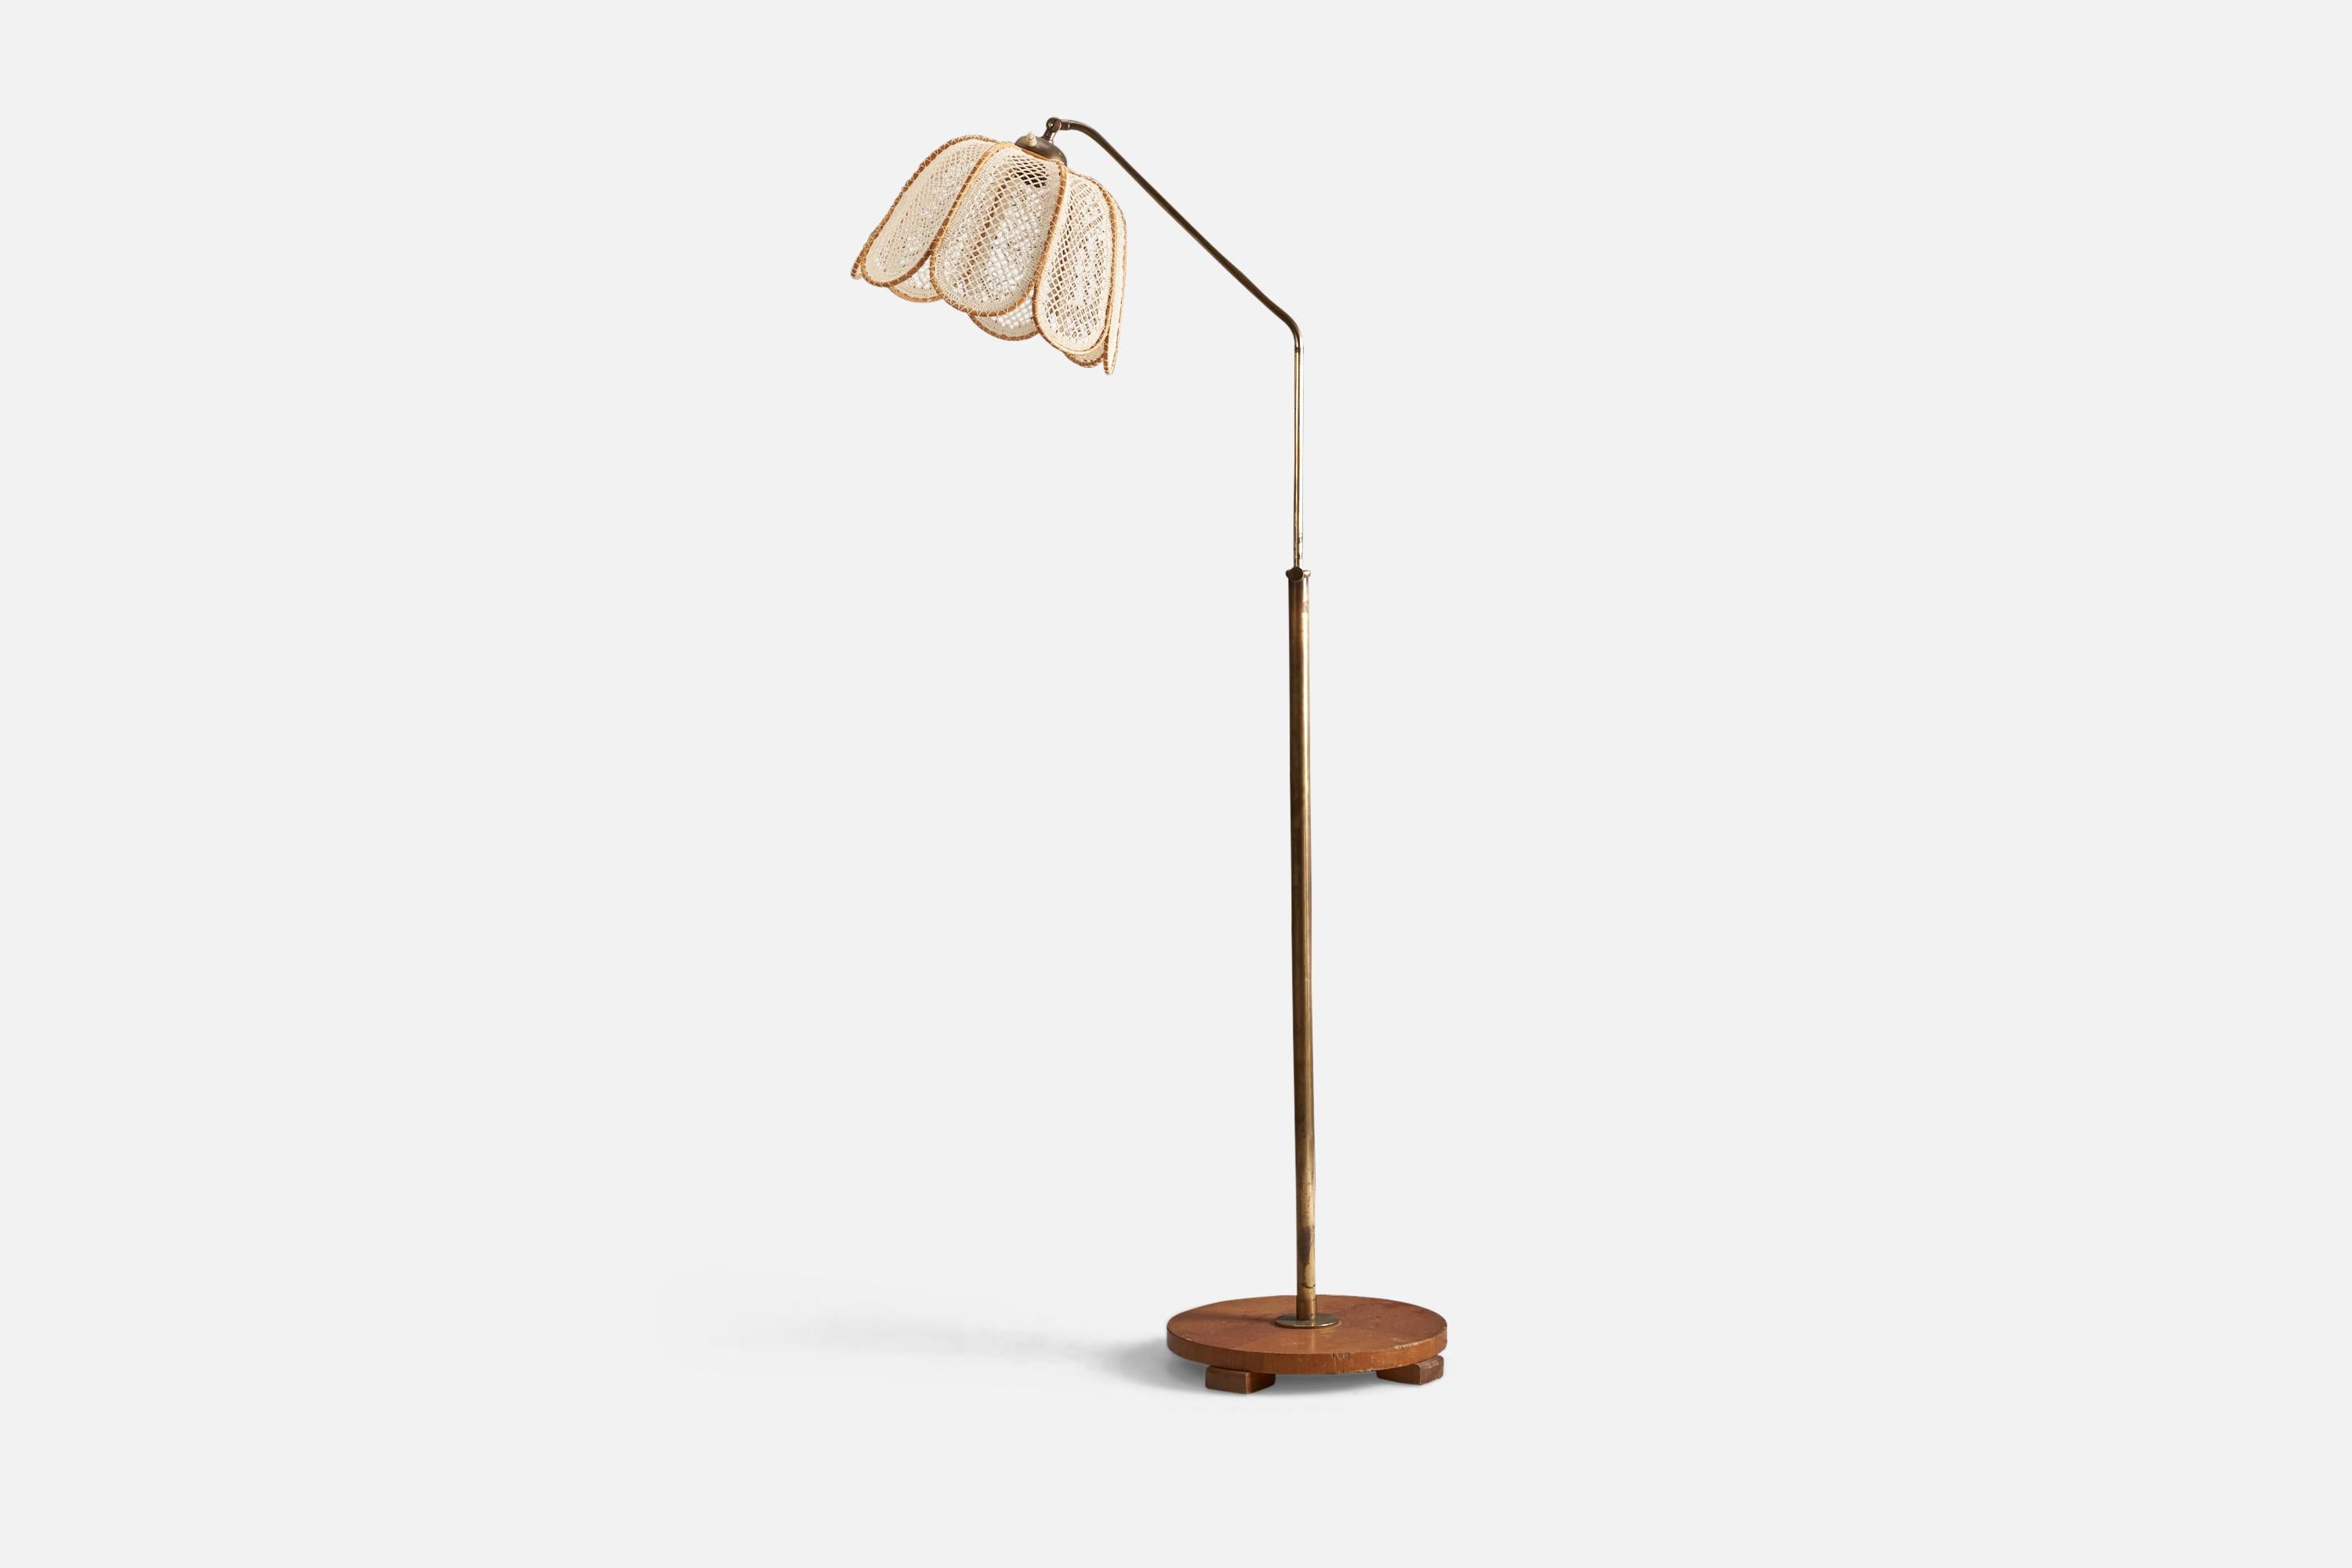 Lampadaire en laiton, bois et tissu brodé conçu et réalisé par un designer suédois, Suède, années 1940.

La douille accepte les ampoules standard E-26 à culot moyen.

Il n'y a pas de puissance maximale indiquée sur le luminaire.